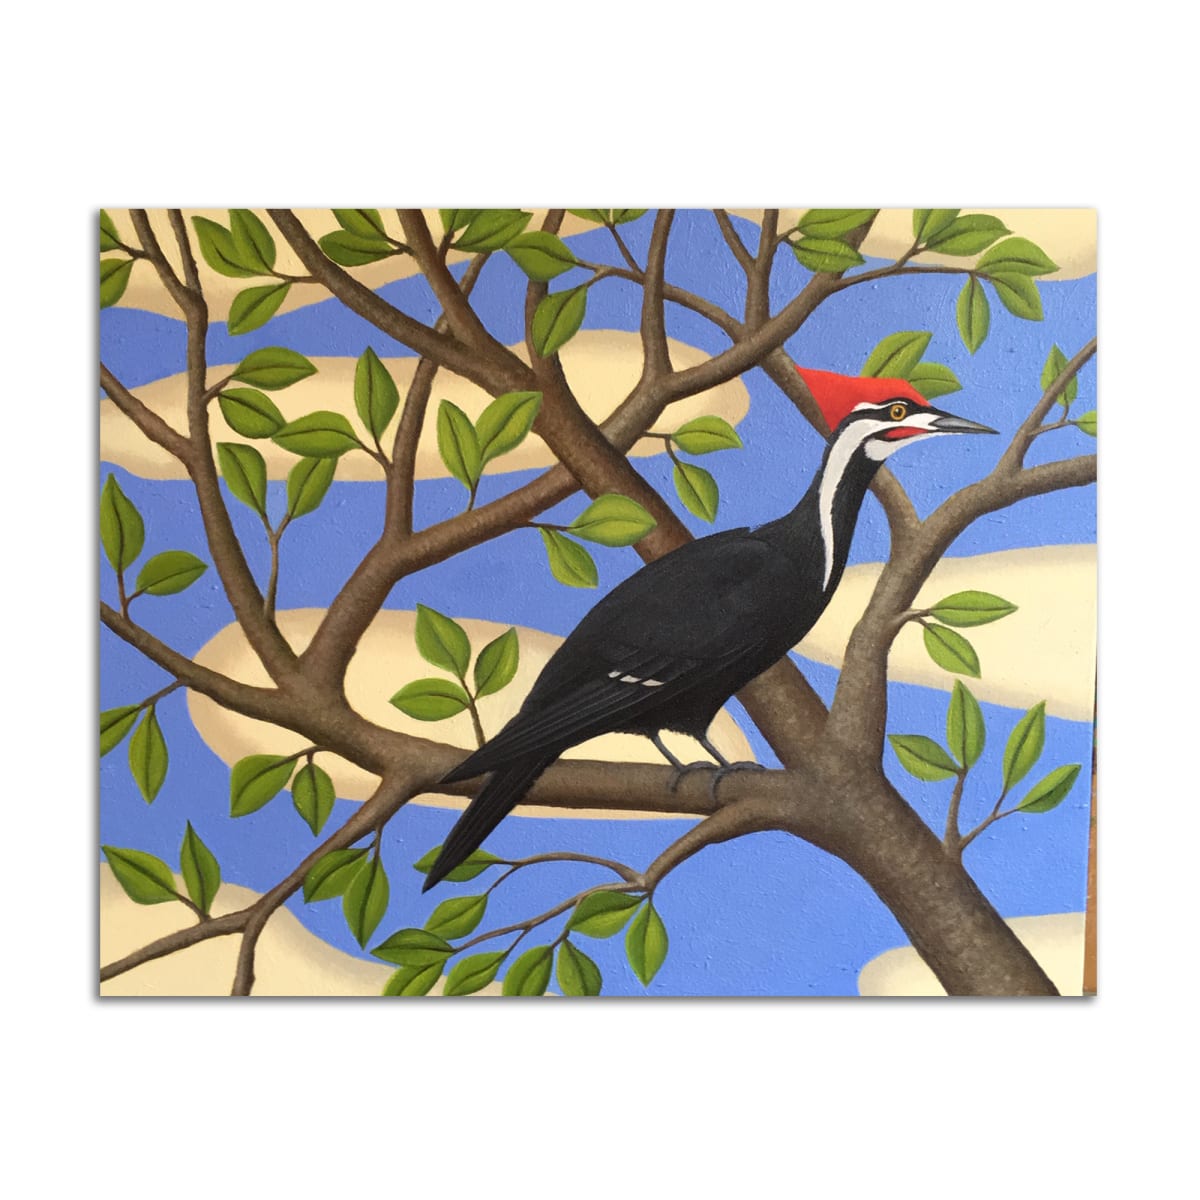 Woodpecker by Jane Troup 